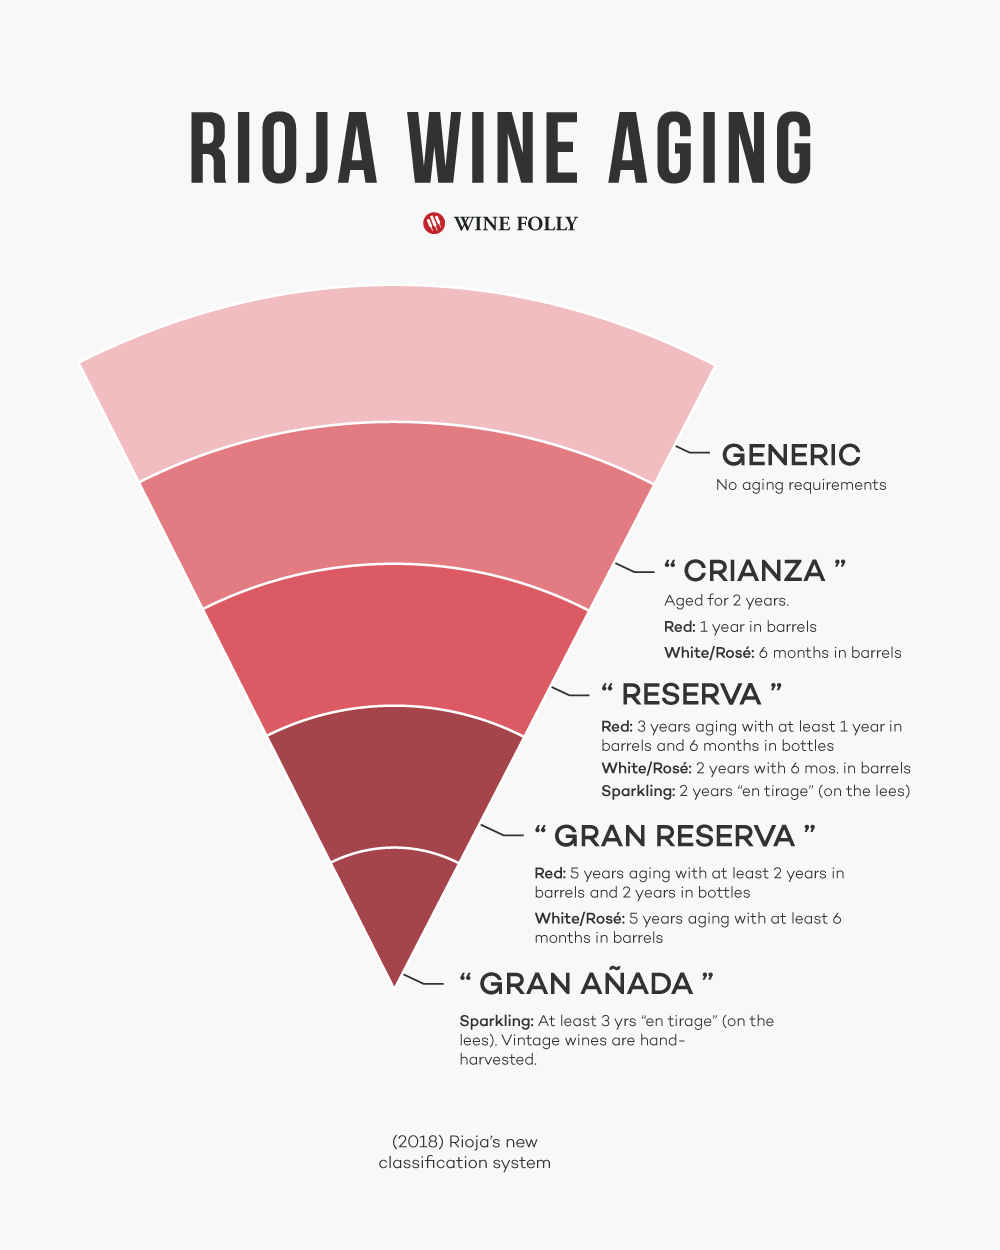 Rioja Wine New Aging Classification system including Crianza, Reserva, Gran Reserva, and Gran Anada